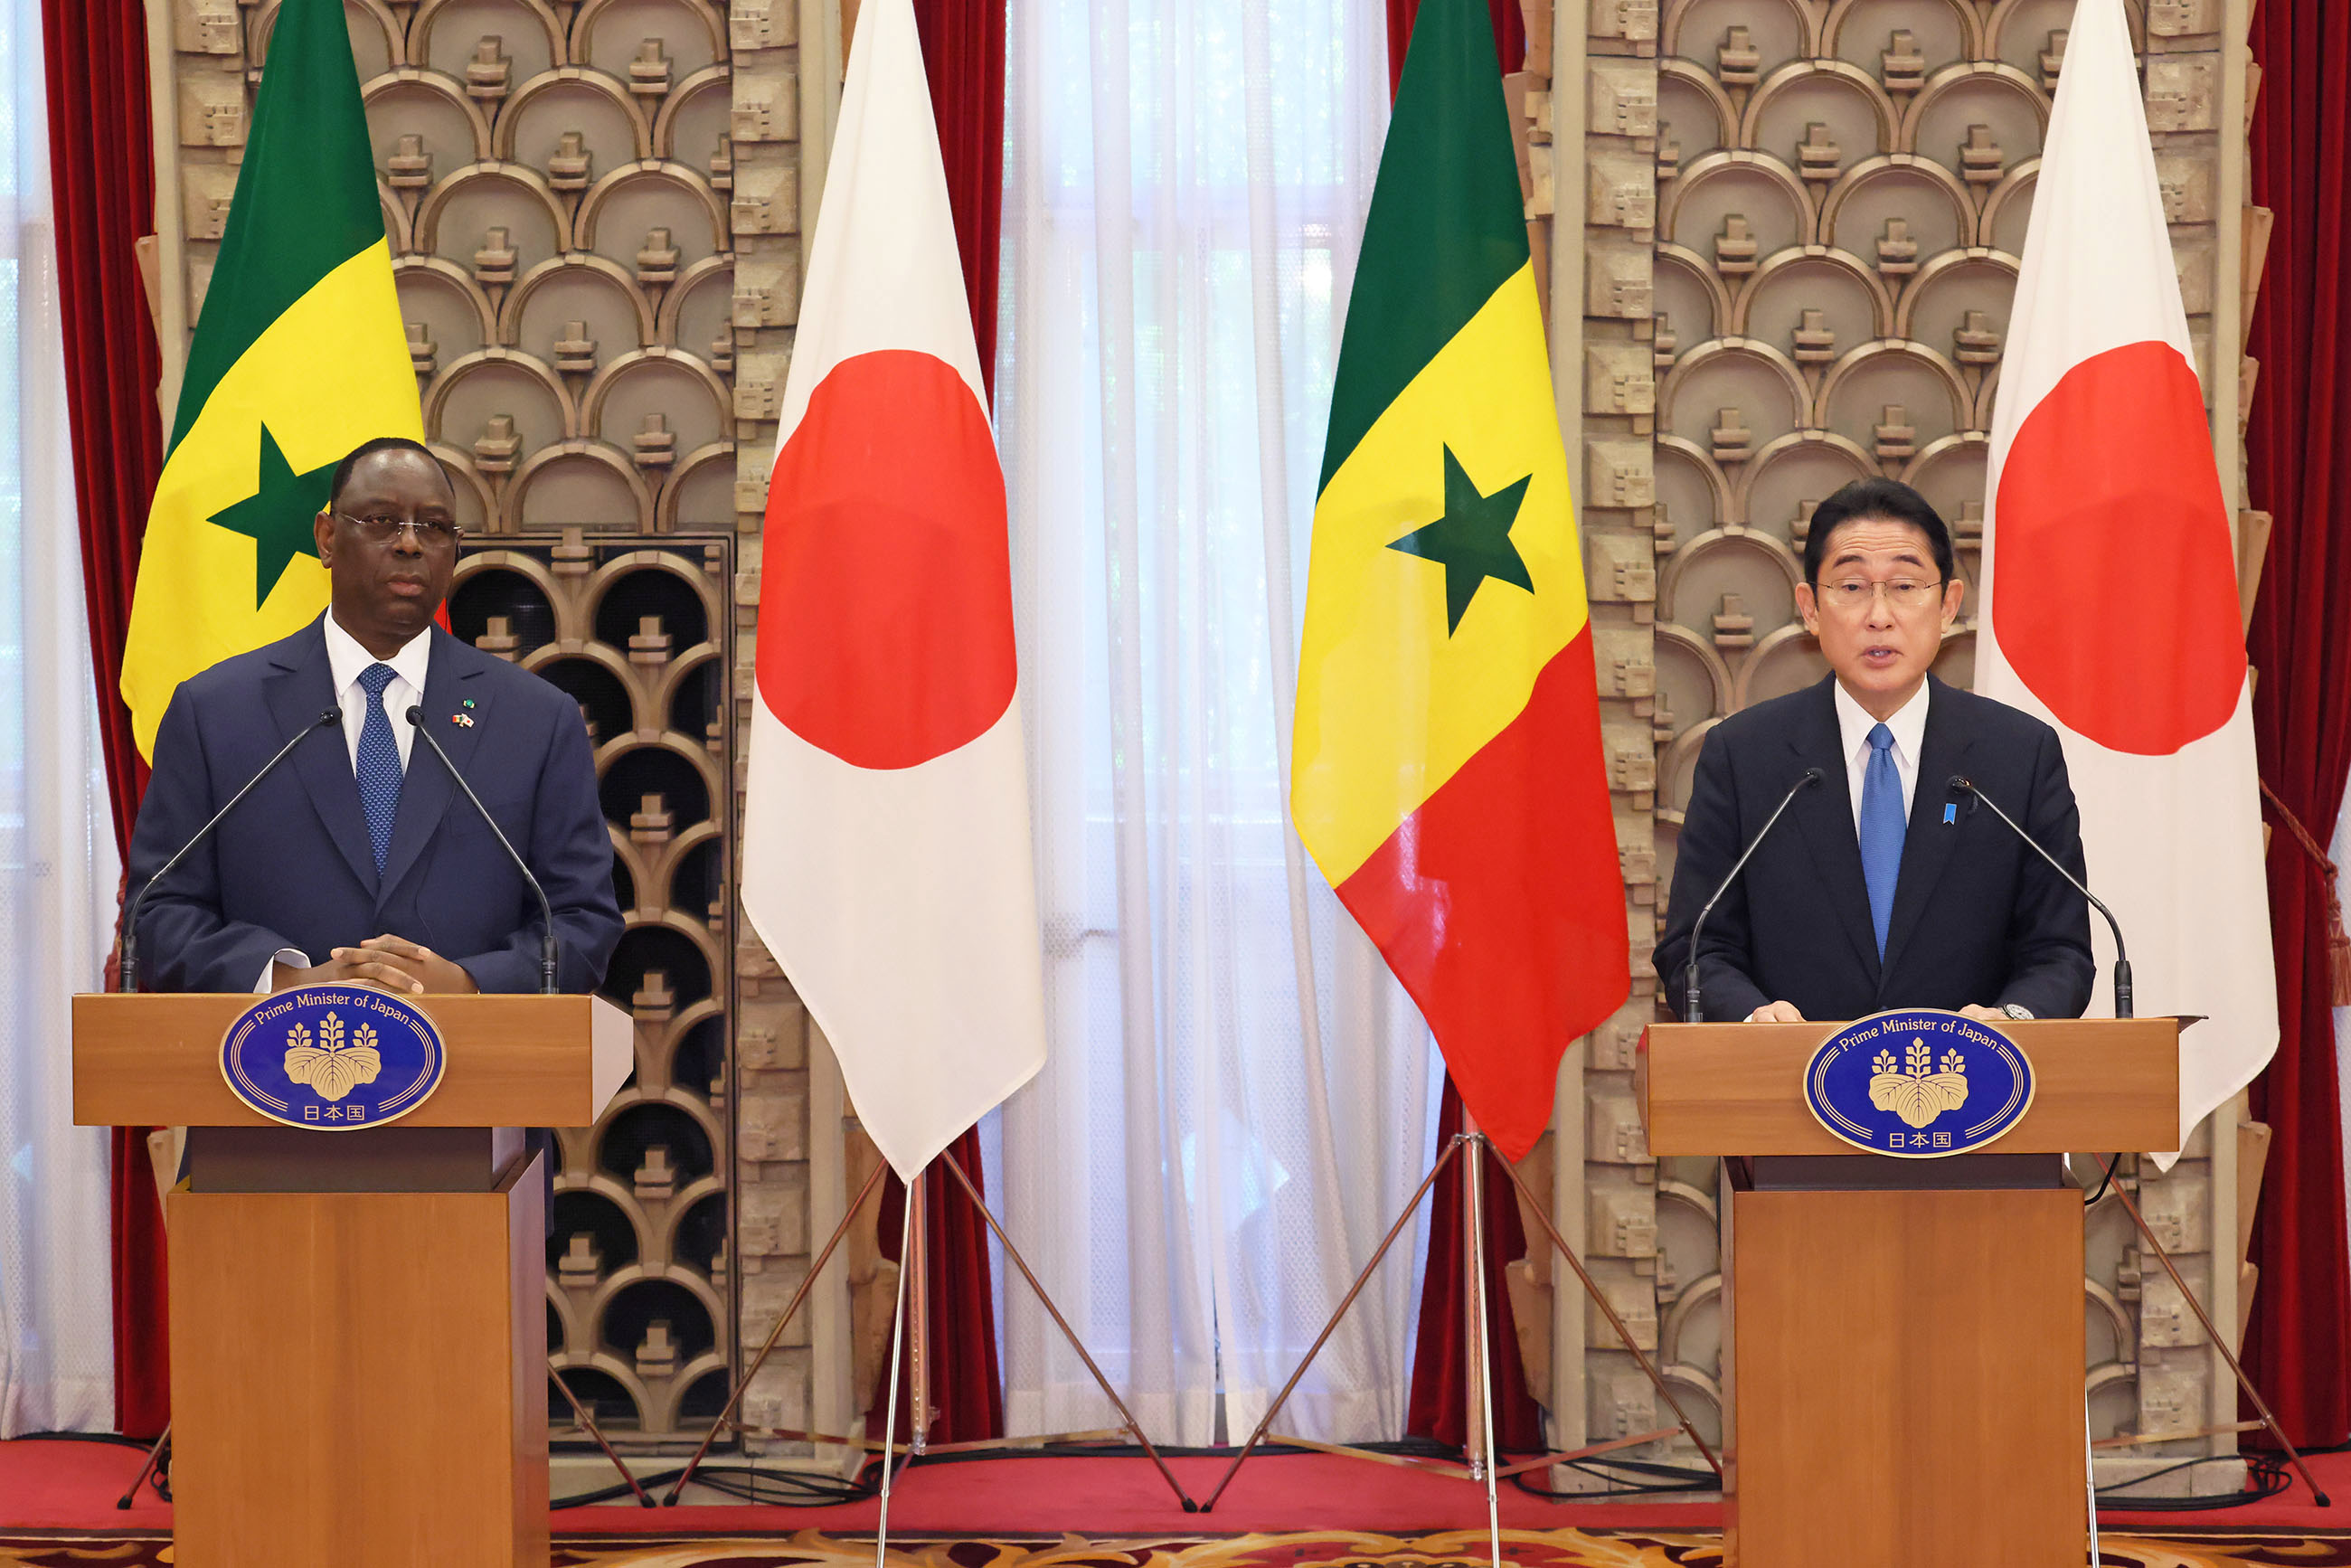 Japan-Senegal joint press announcement (2)